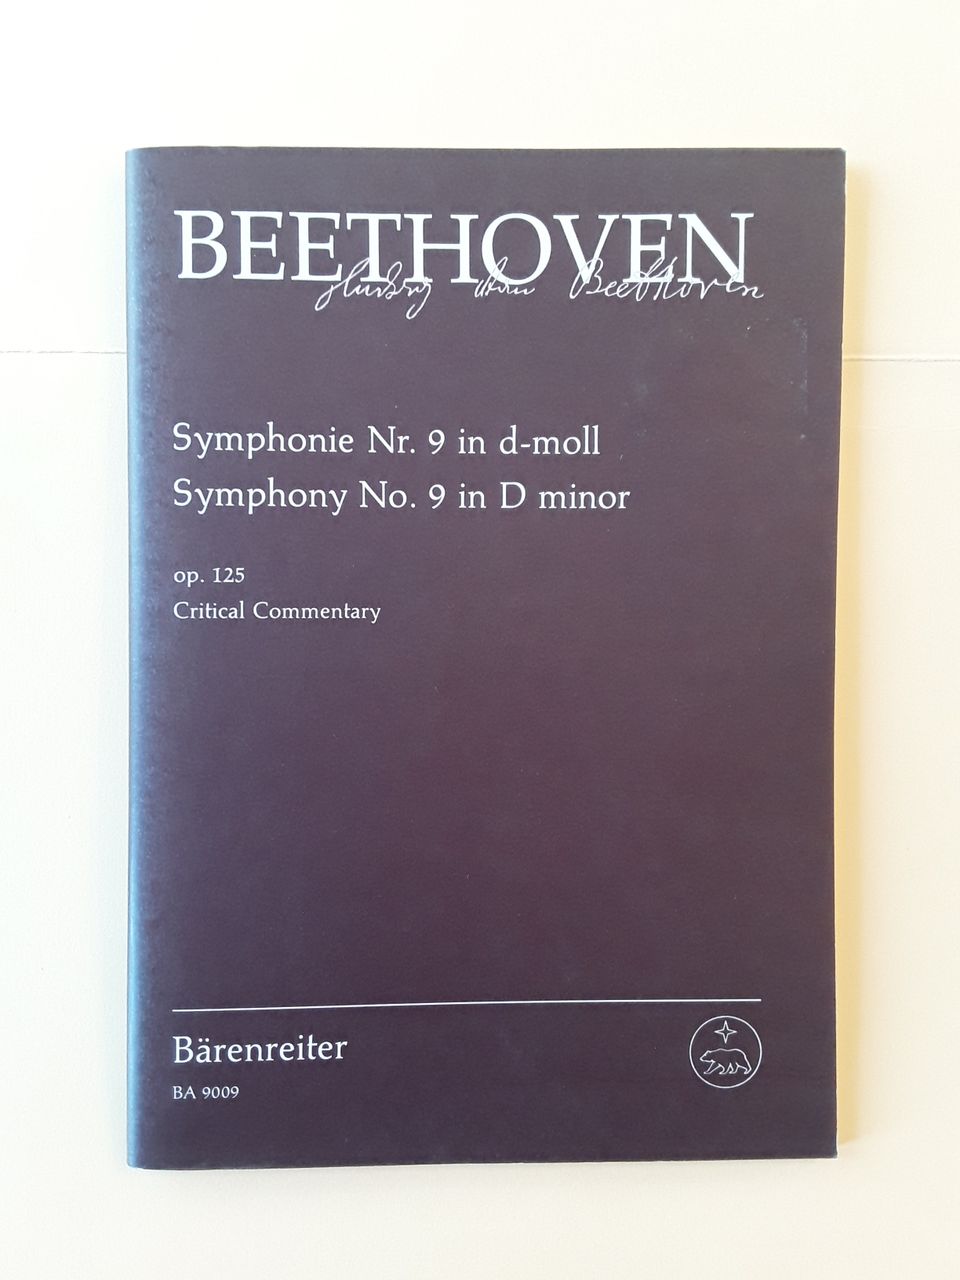 Beethoven, Sinfonia 9, kriittiset kommentaarit